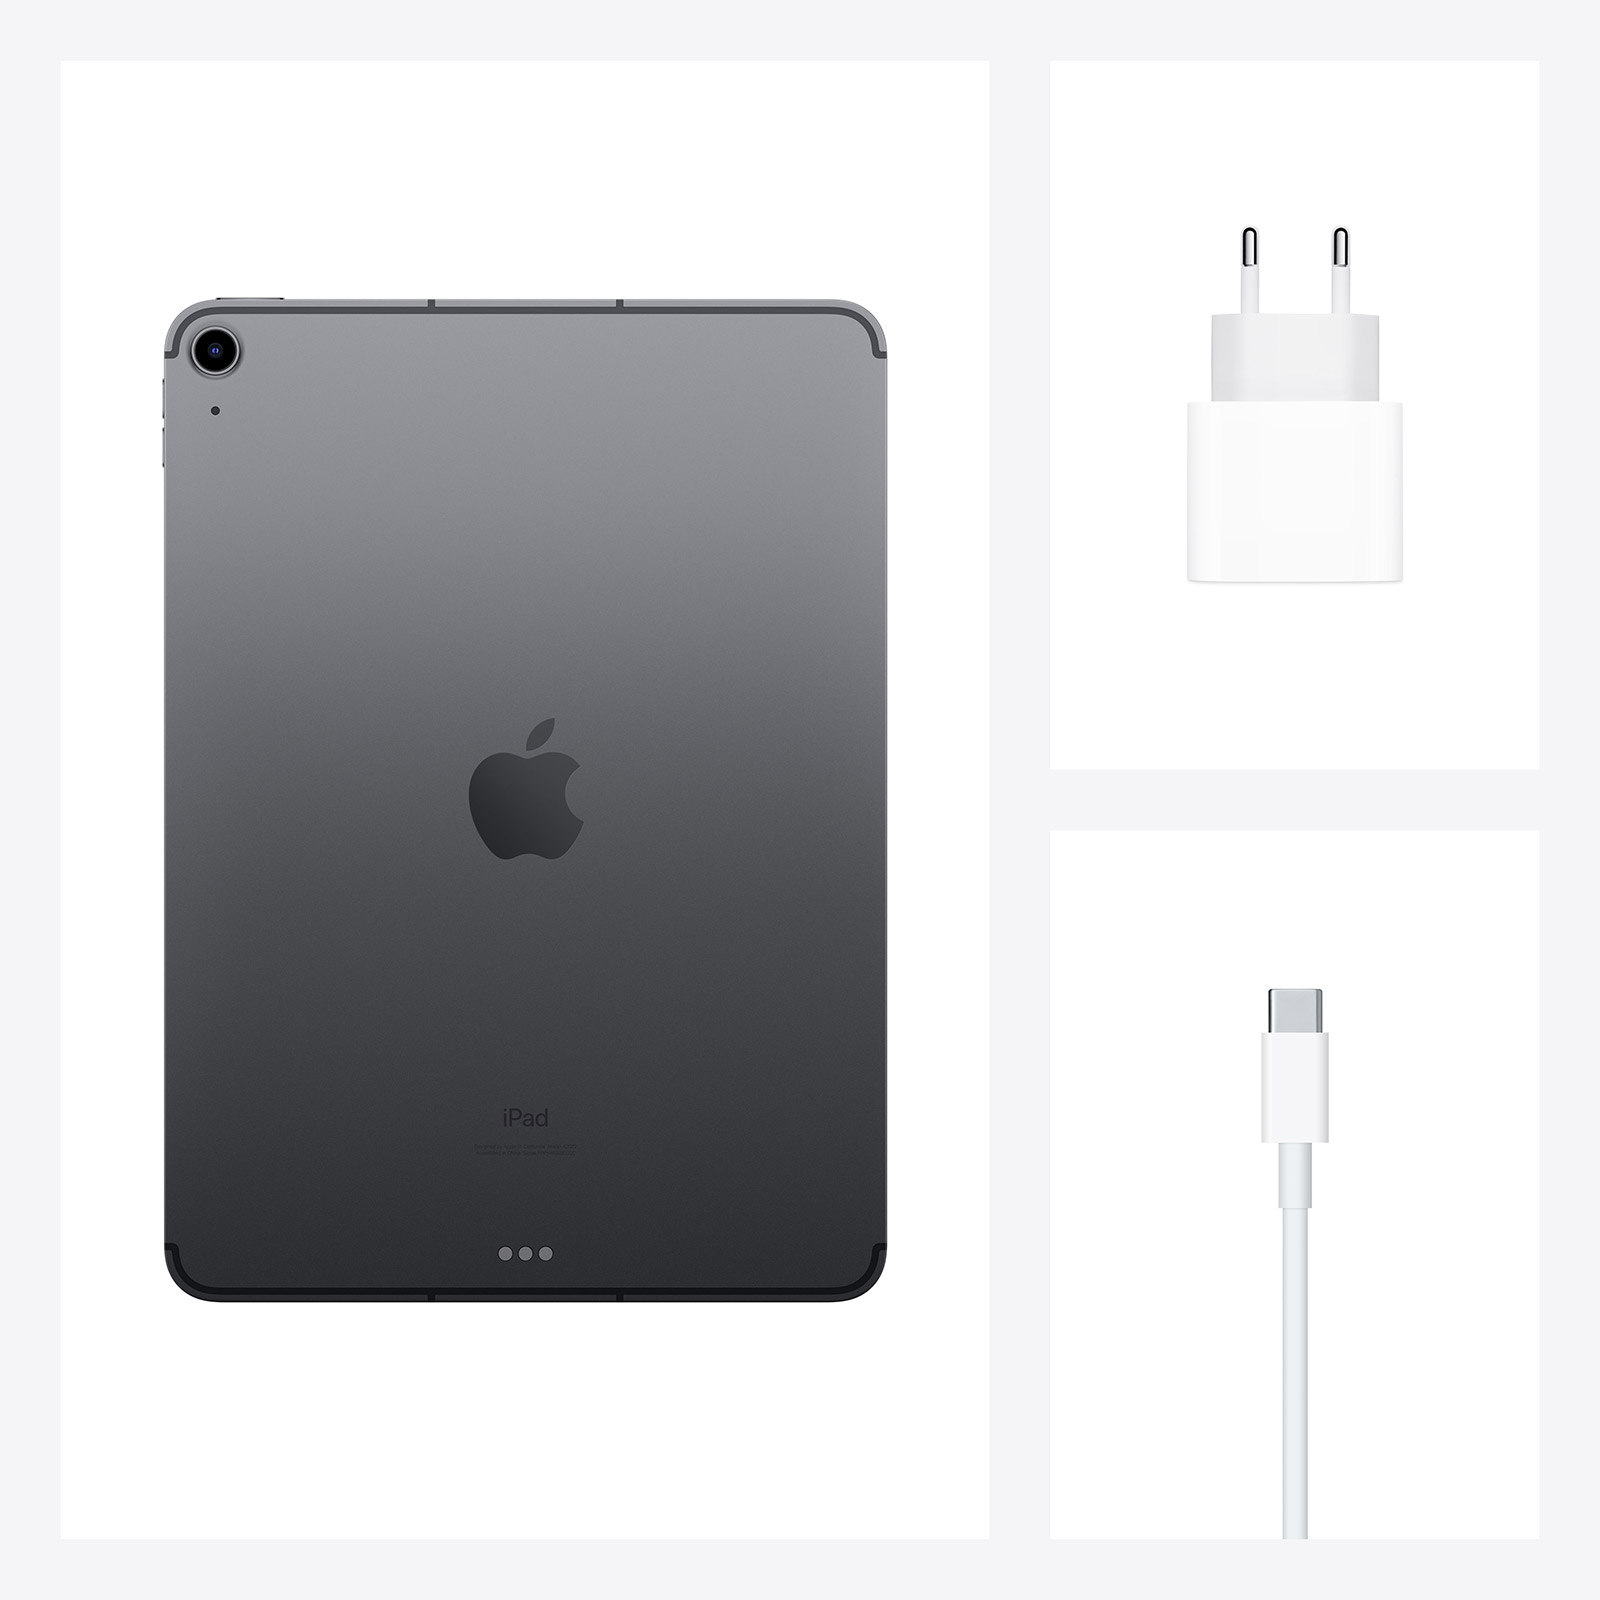 Apple-10-9-iPad-Air-WiFi-Cell-64-GB-Space-Grau-2020-09.jpg